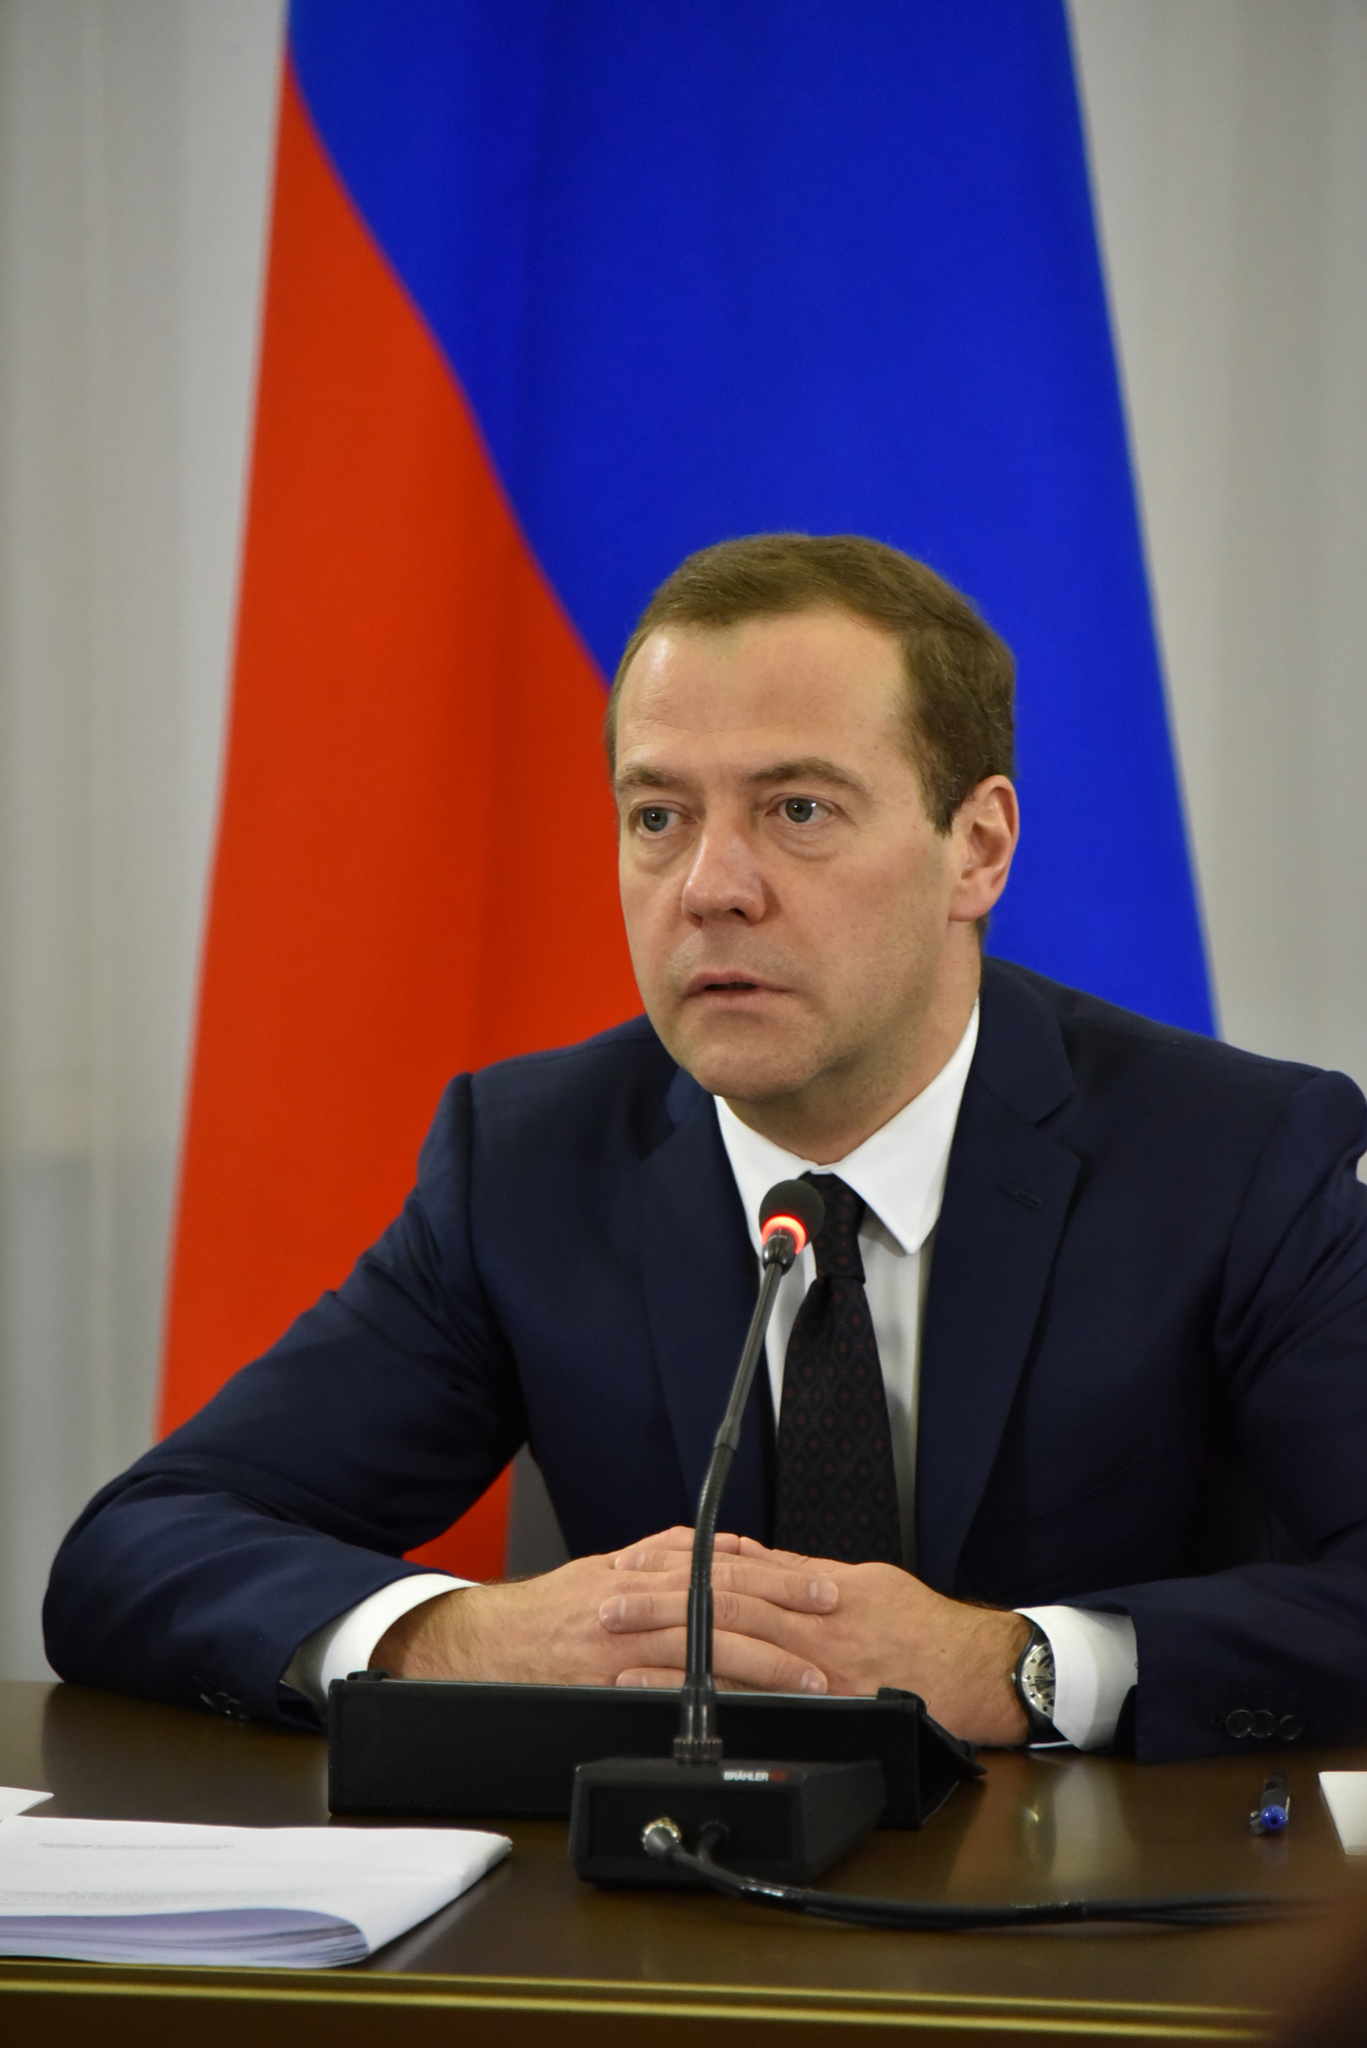 Дмитрий Медведев: Более 30 миллиардов рублей предлагается направить регионам на снабжение льготников лекарствами